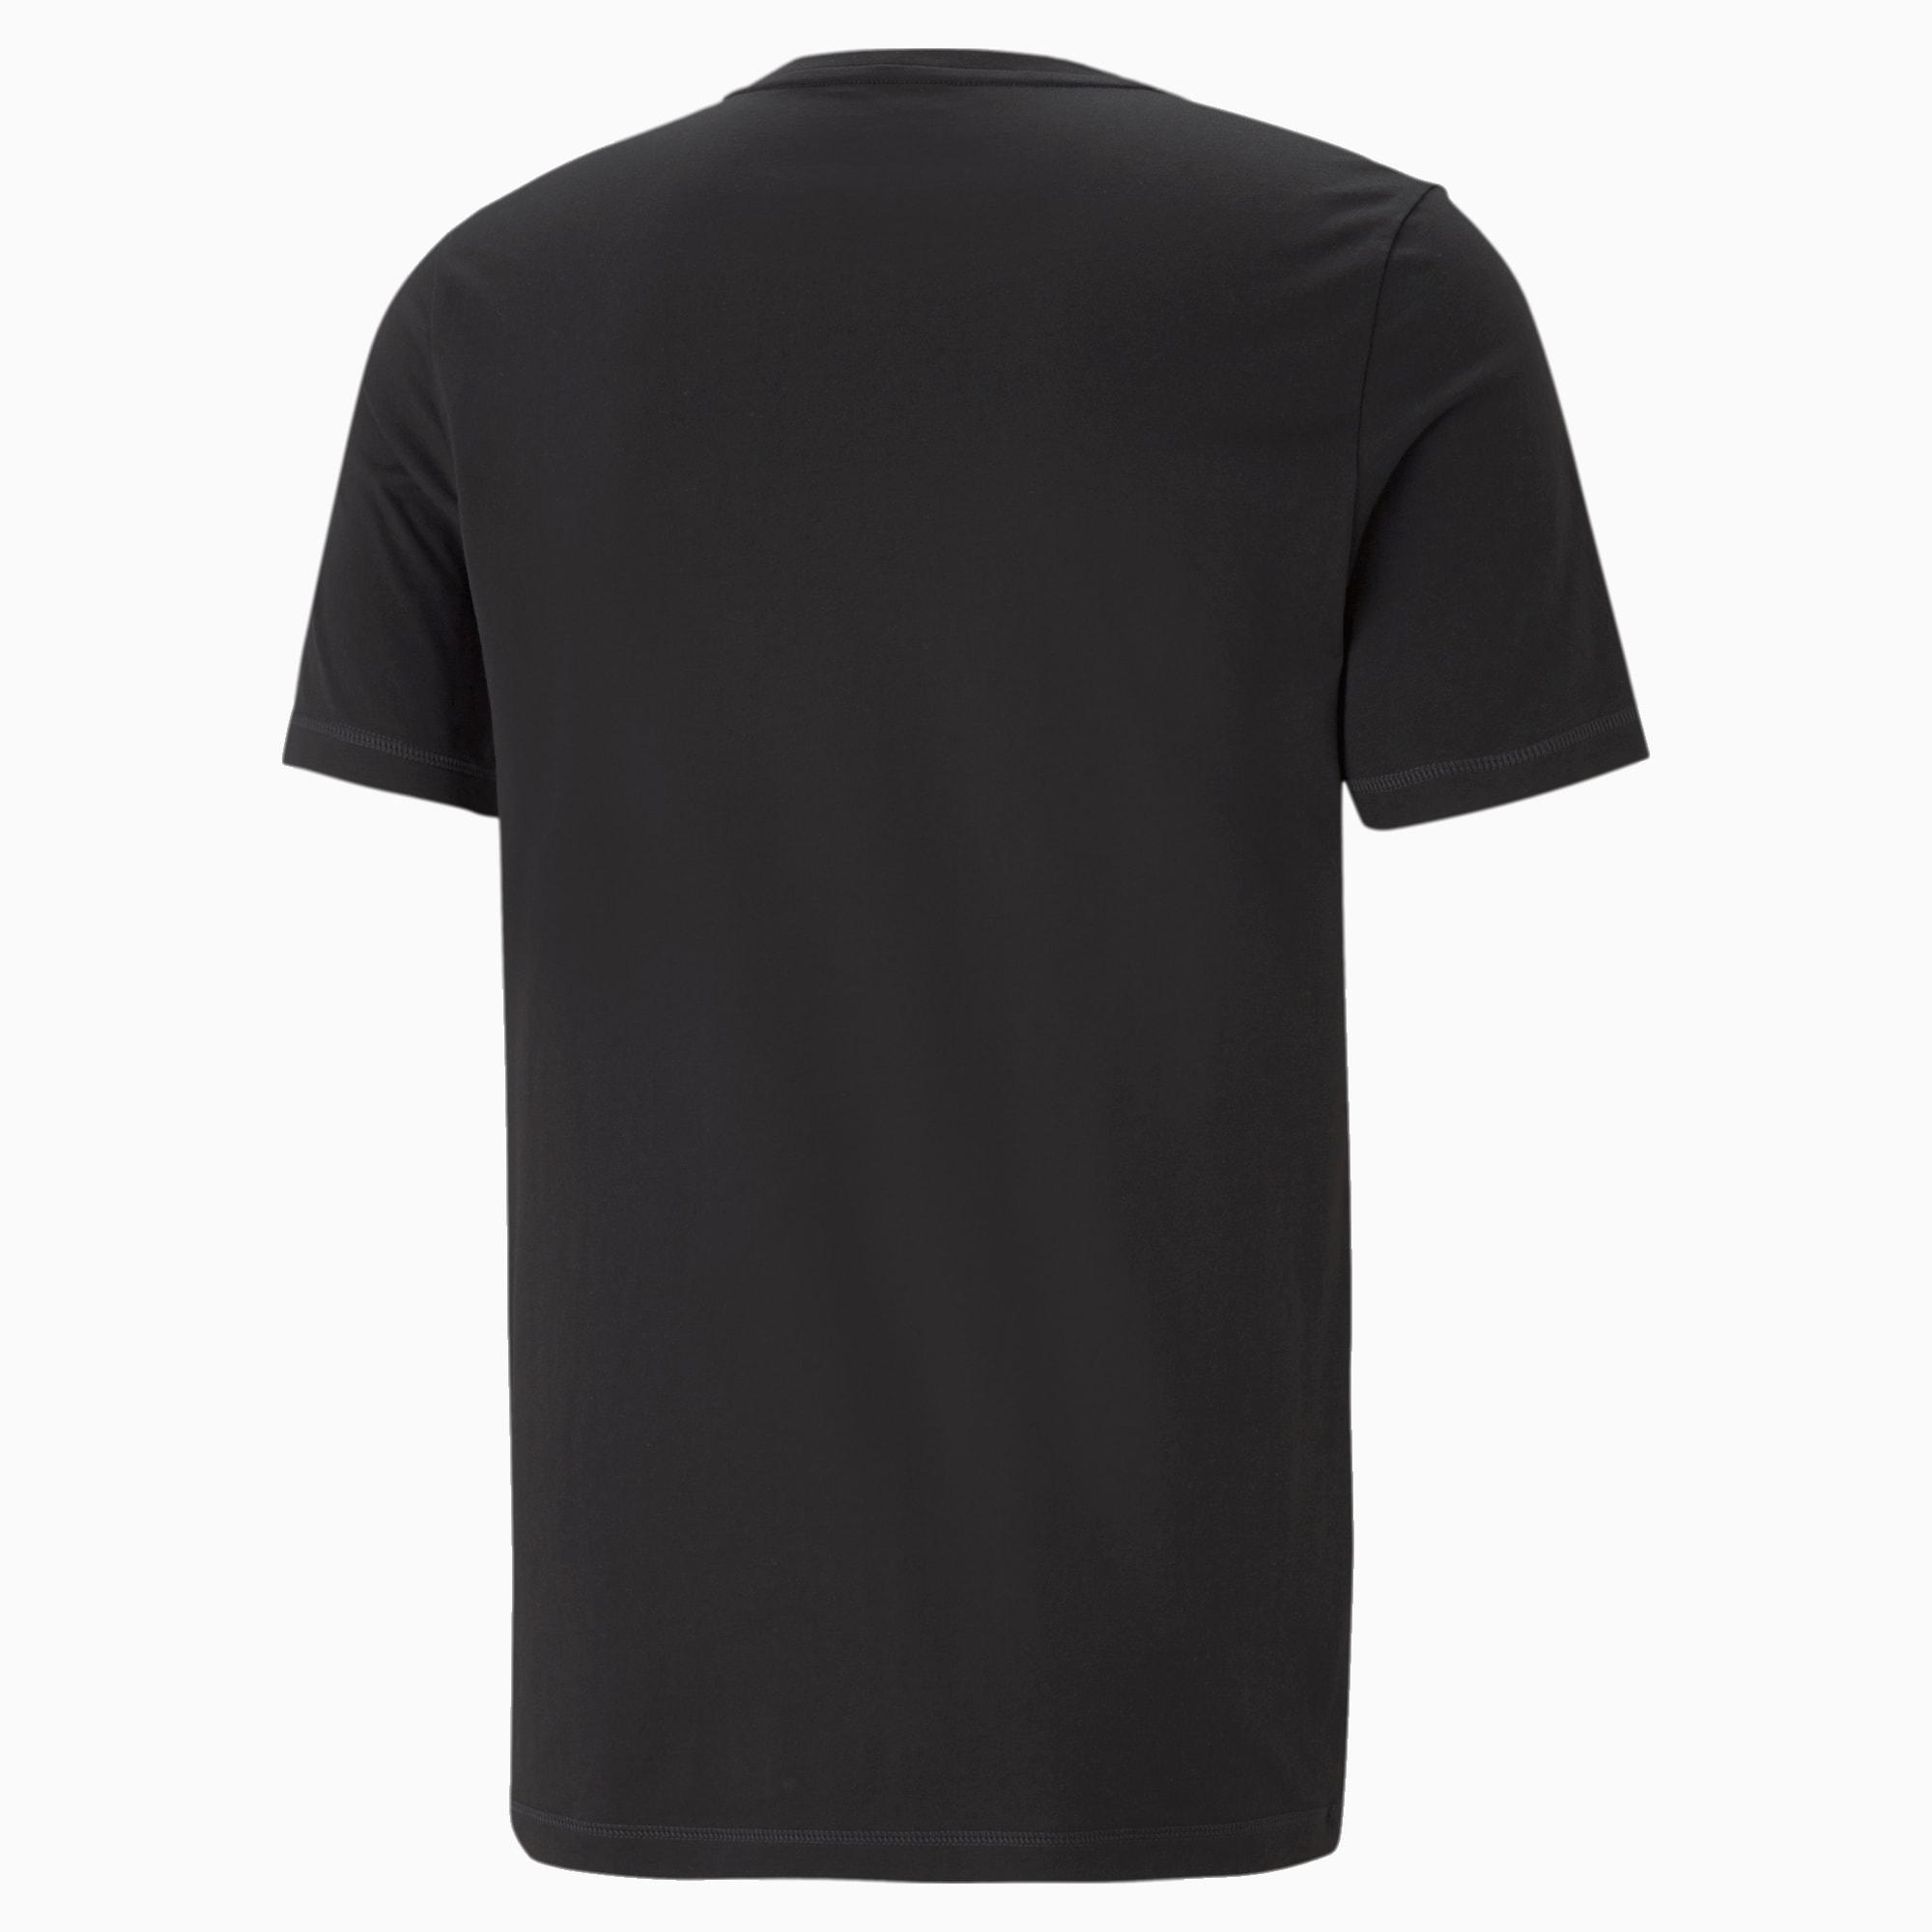 PUMA Active Soft Men's T-Shirt, Black, Size M, Clothing